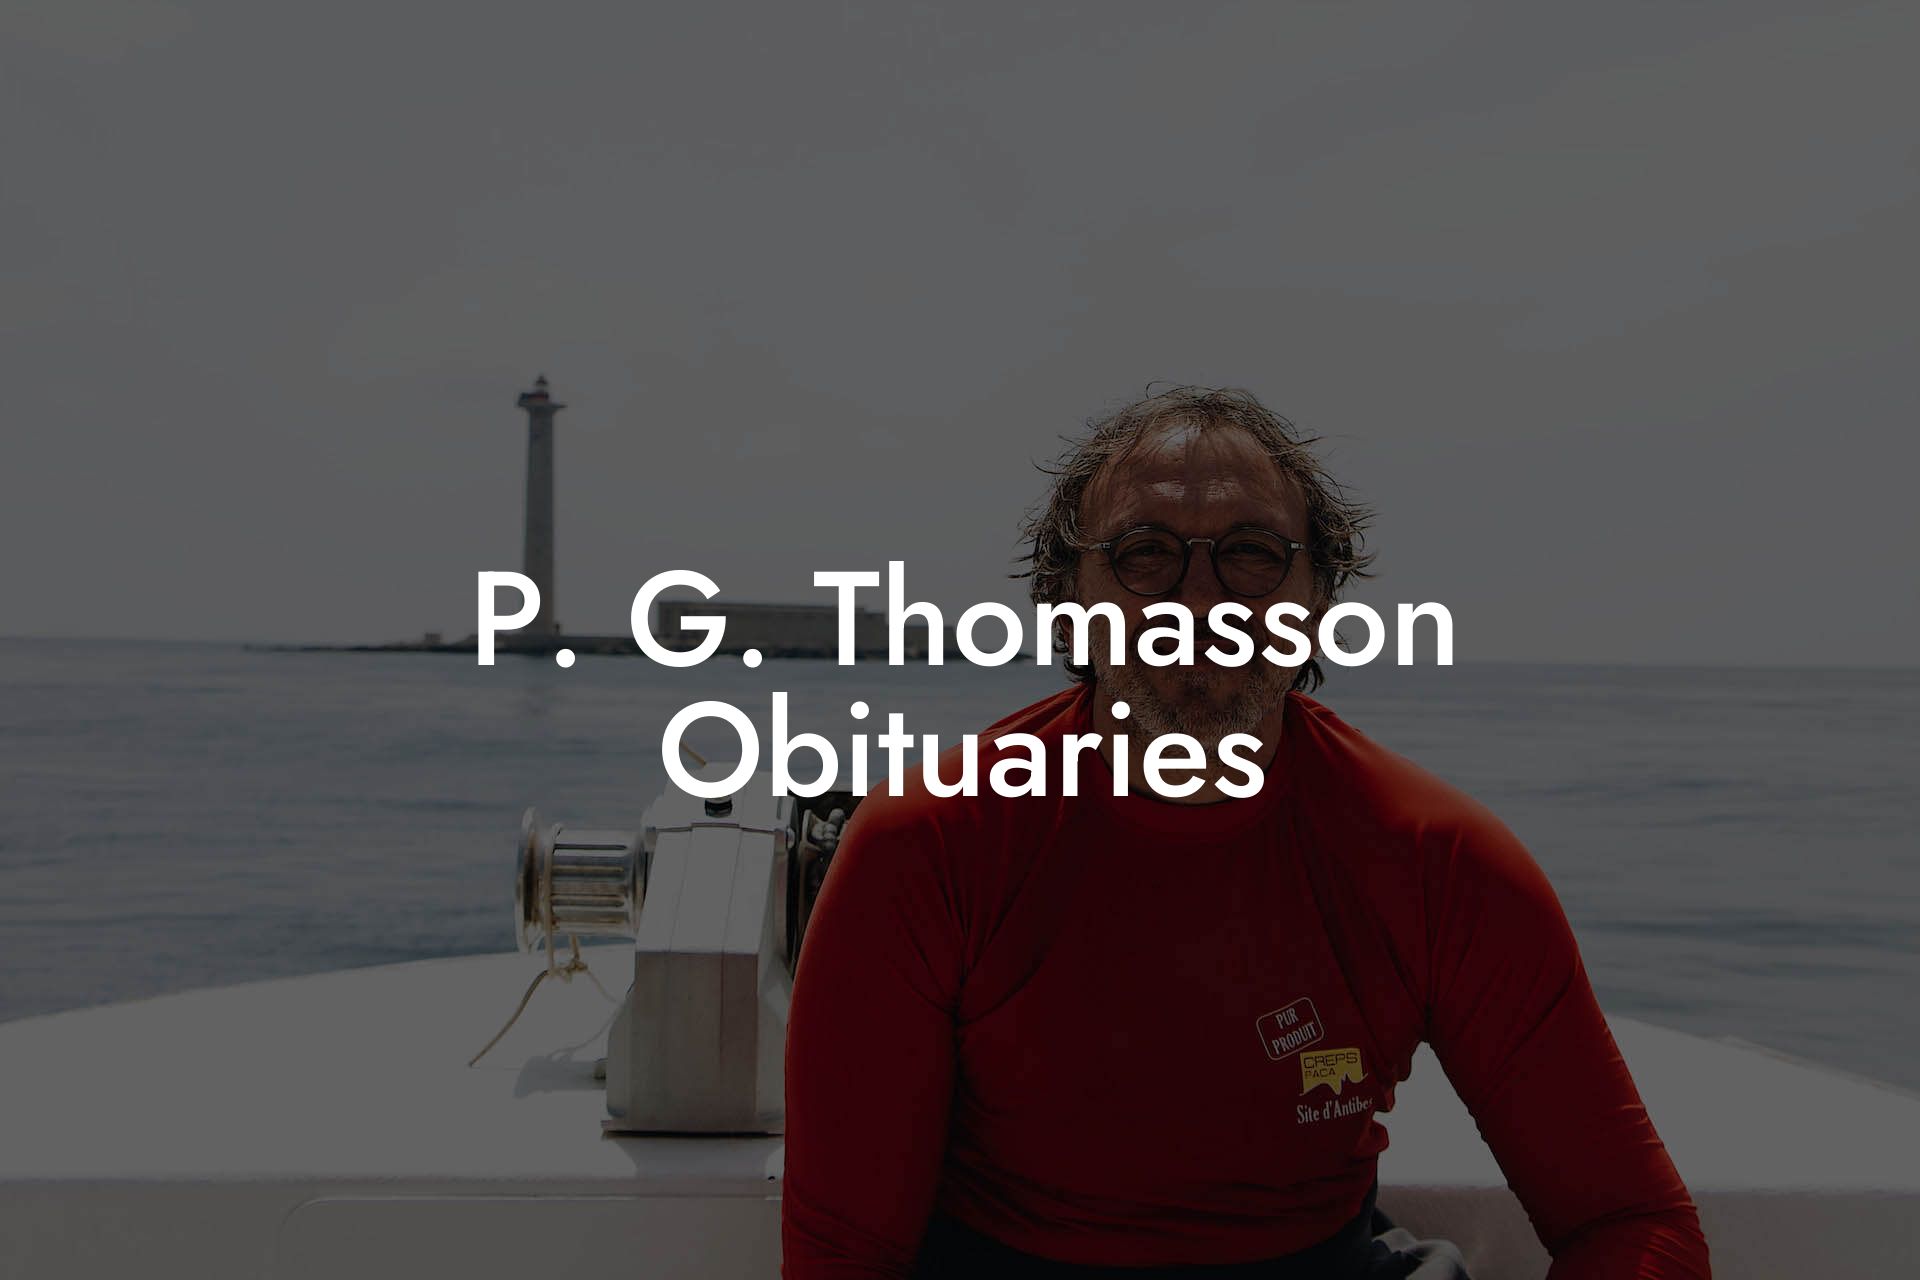 P. G. Thomasson Obituaries